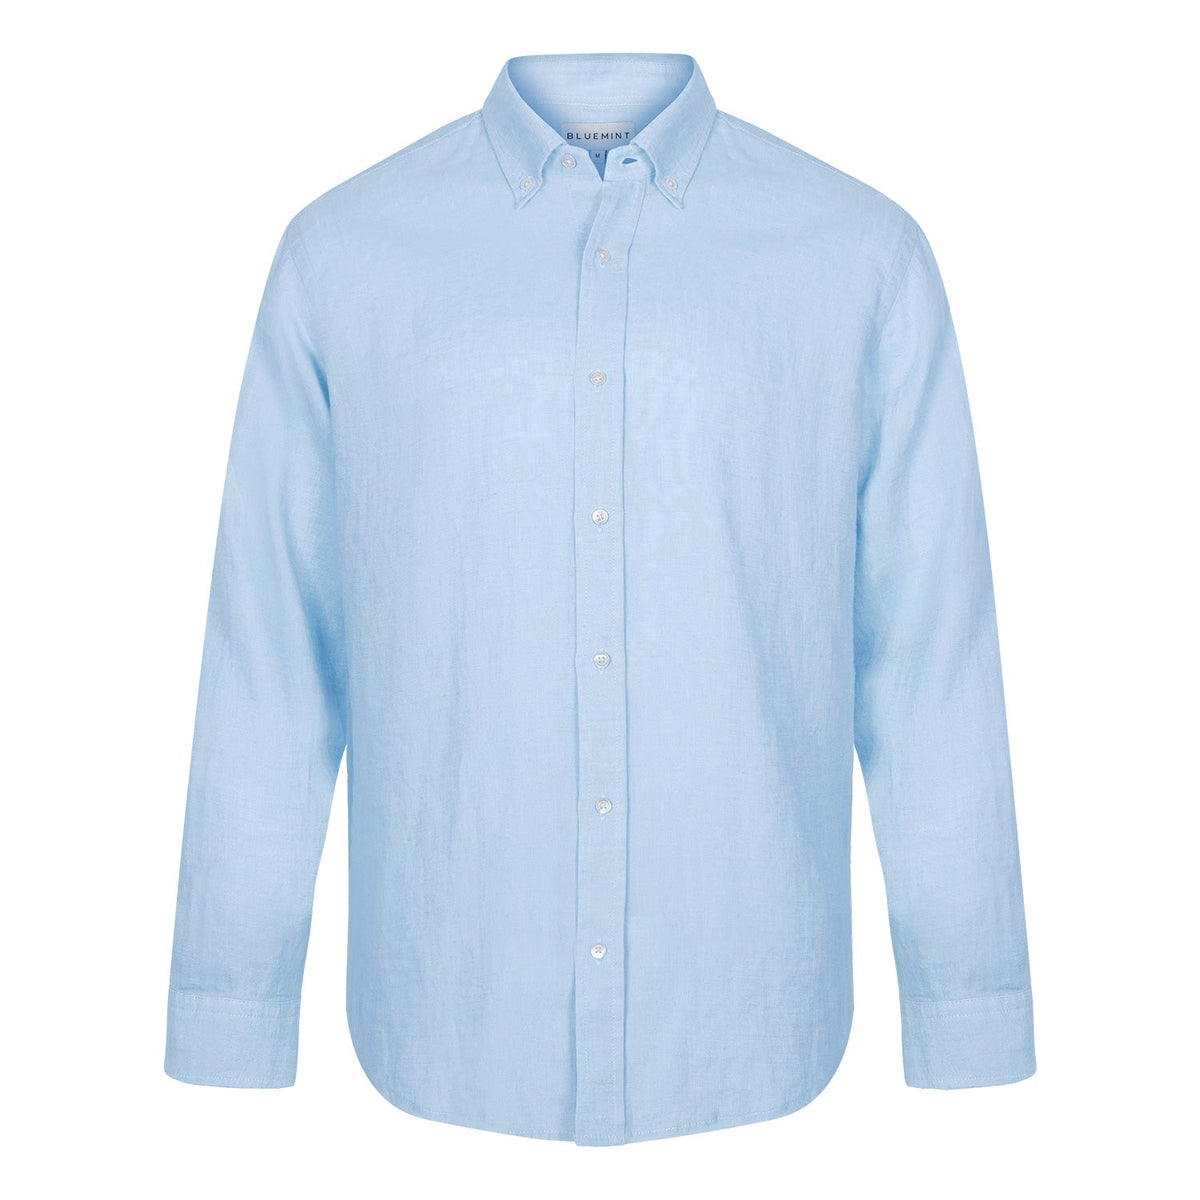 Bluemint Linen Shirt